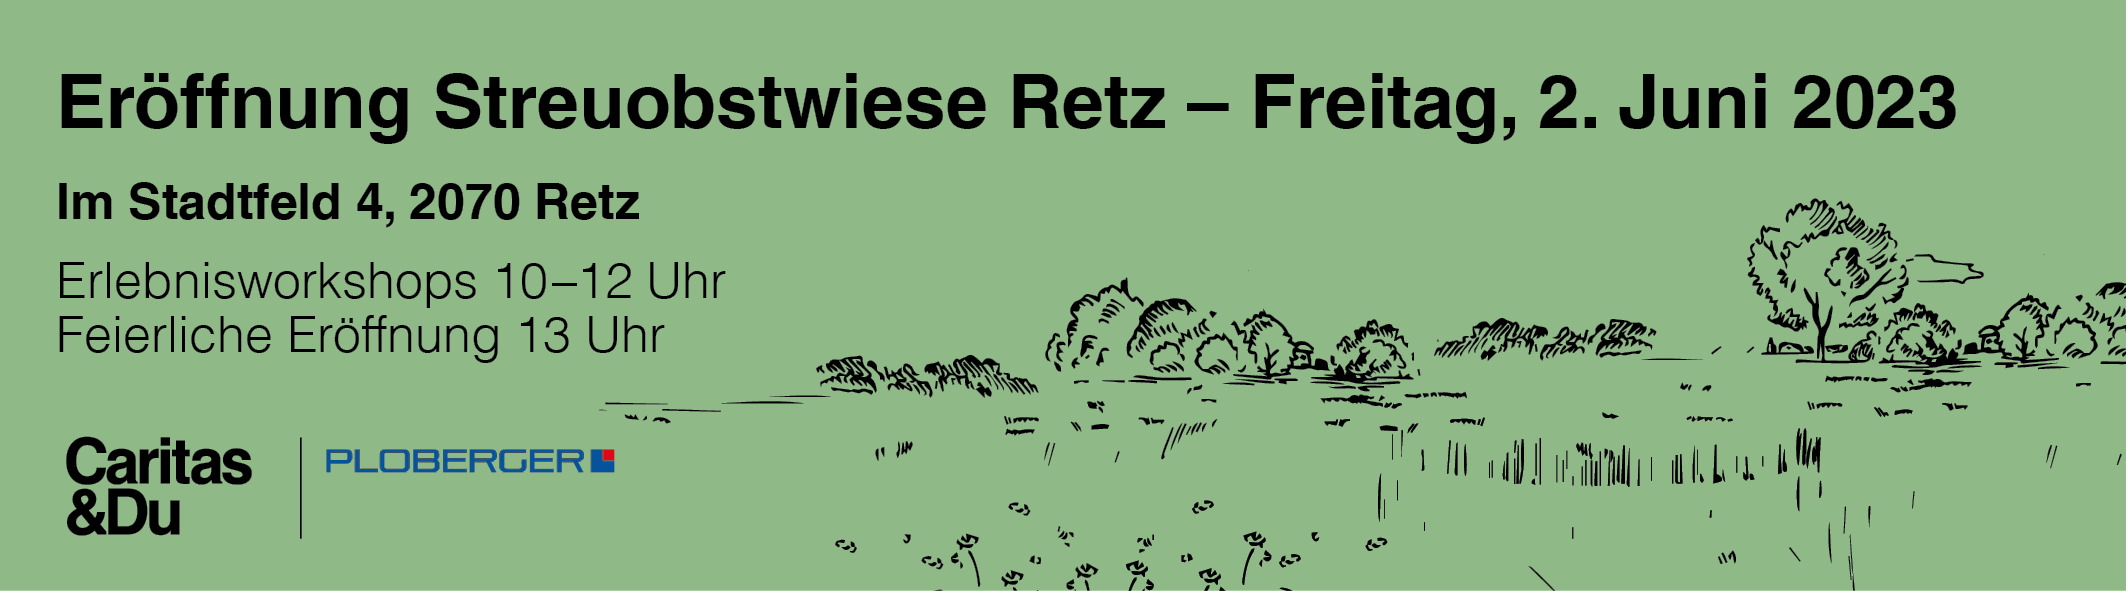 Eröffnung Streuobstwiese Retz